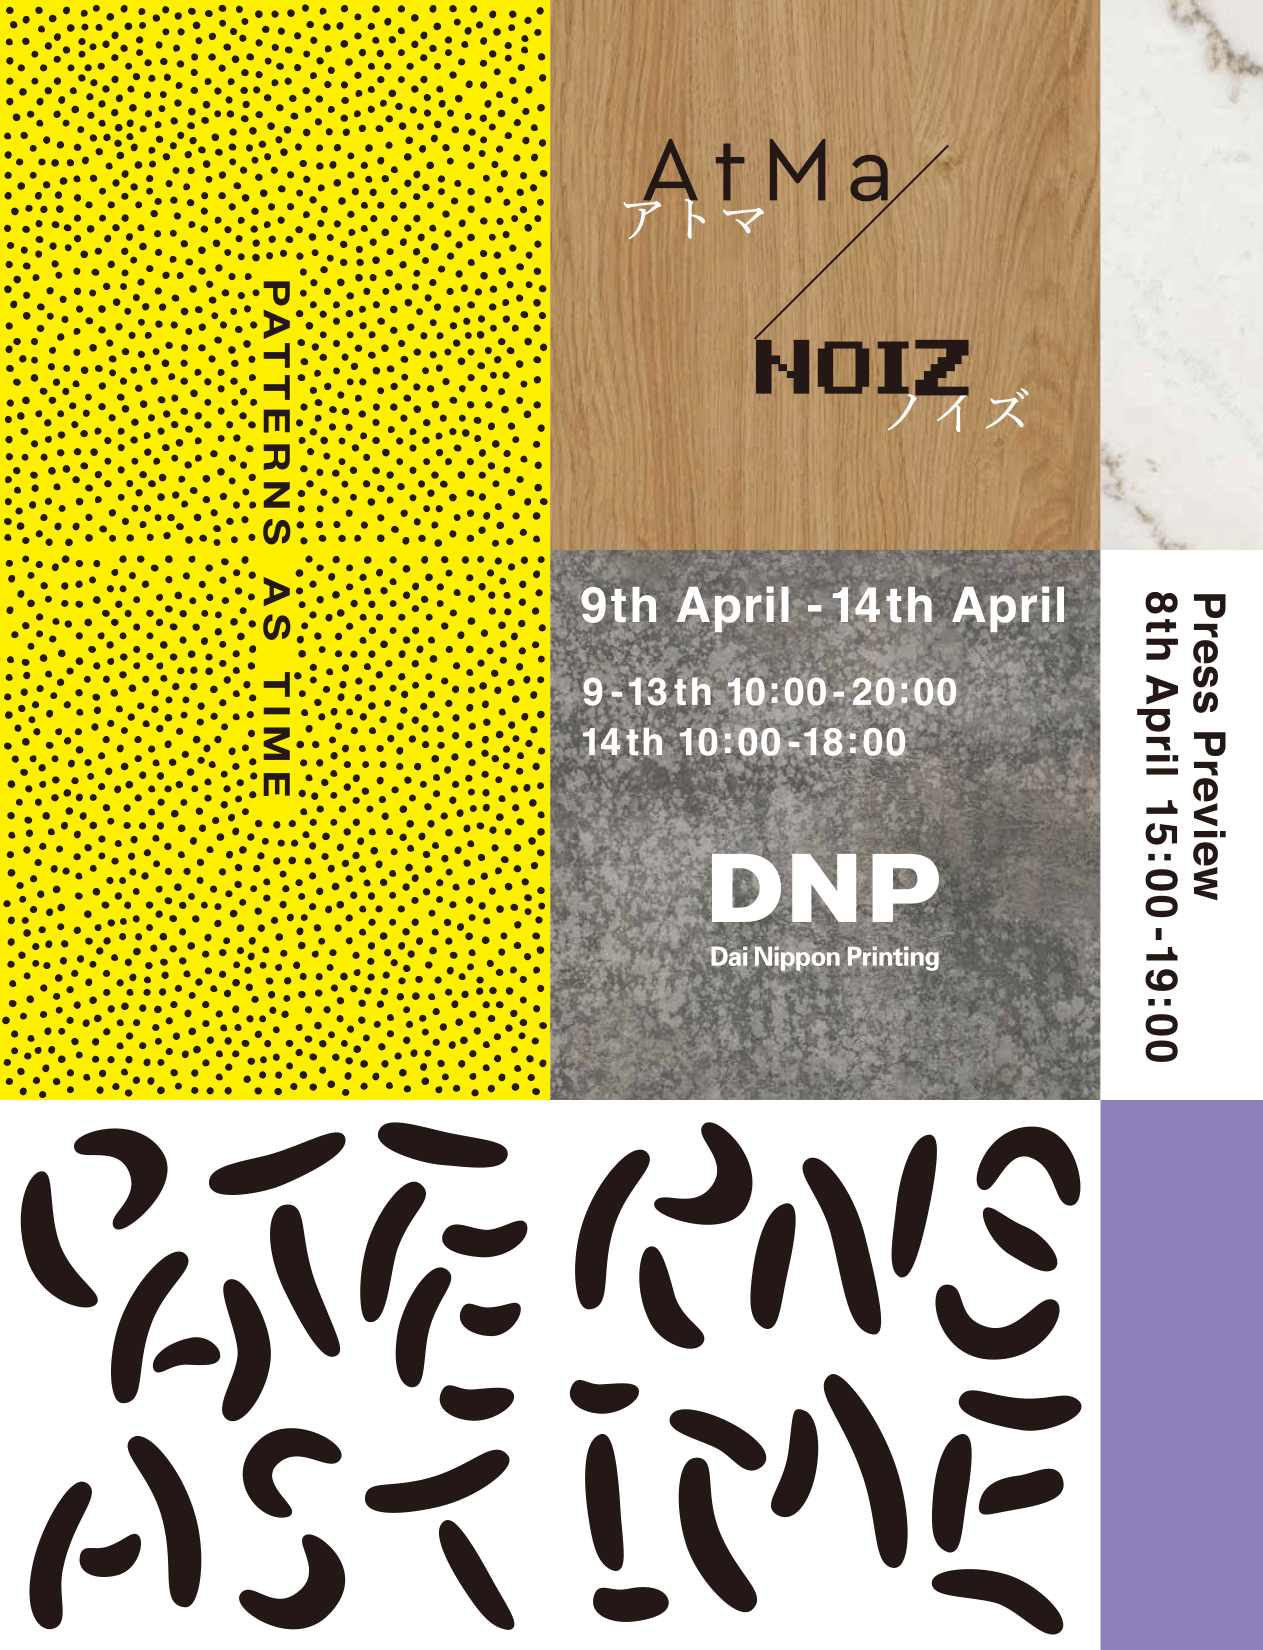 Dnp Patterns As Time Milan Design Week 19